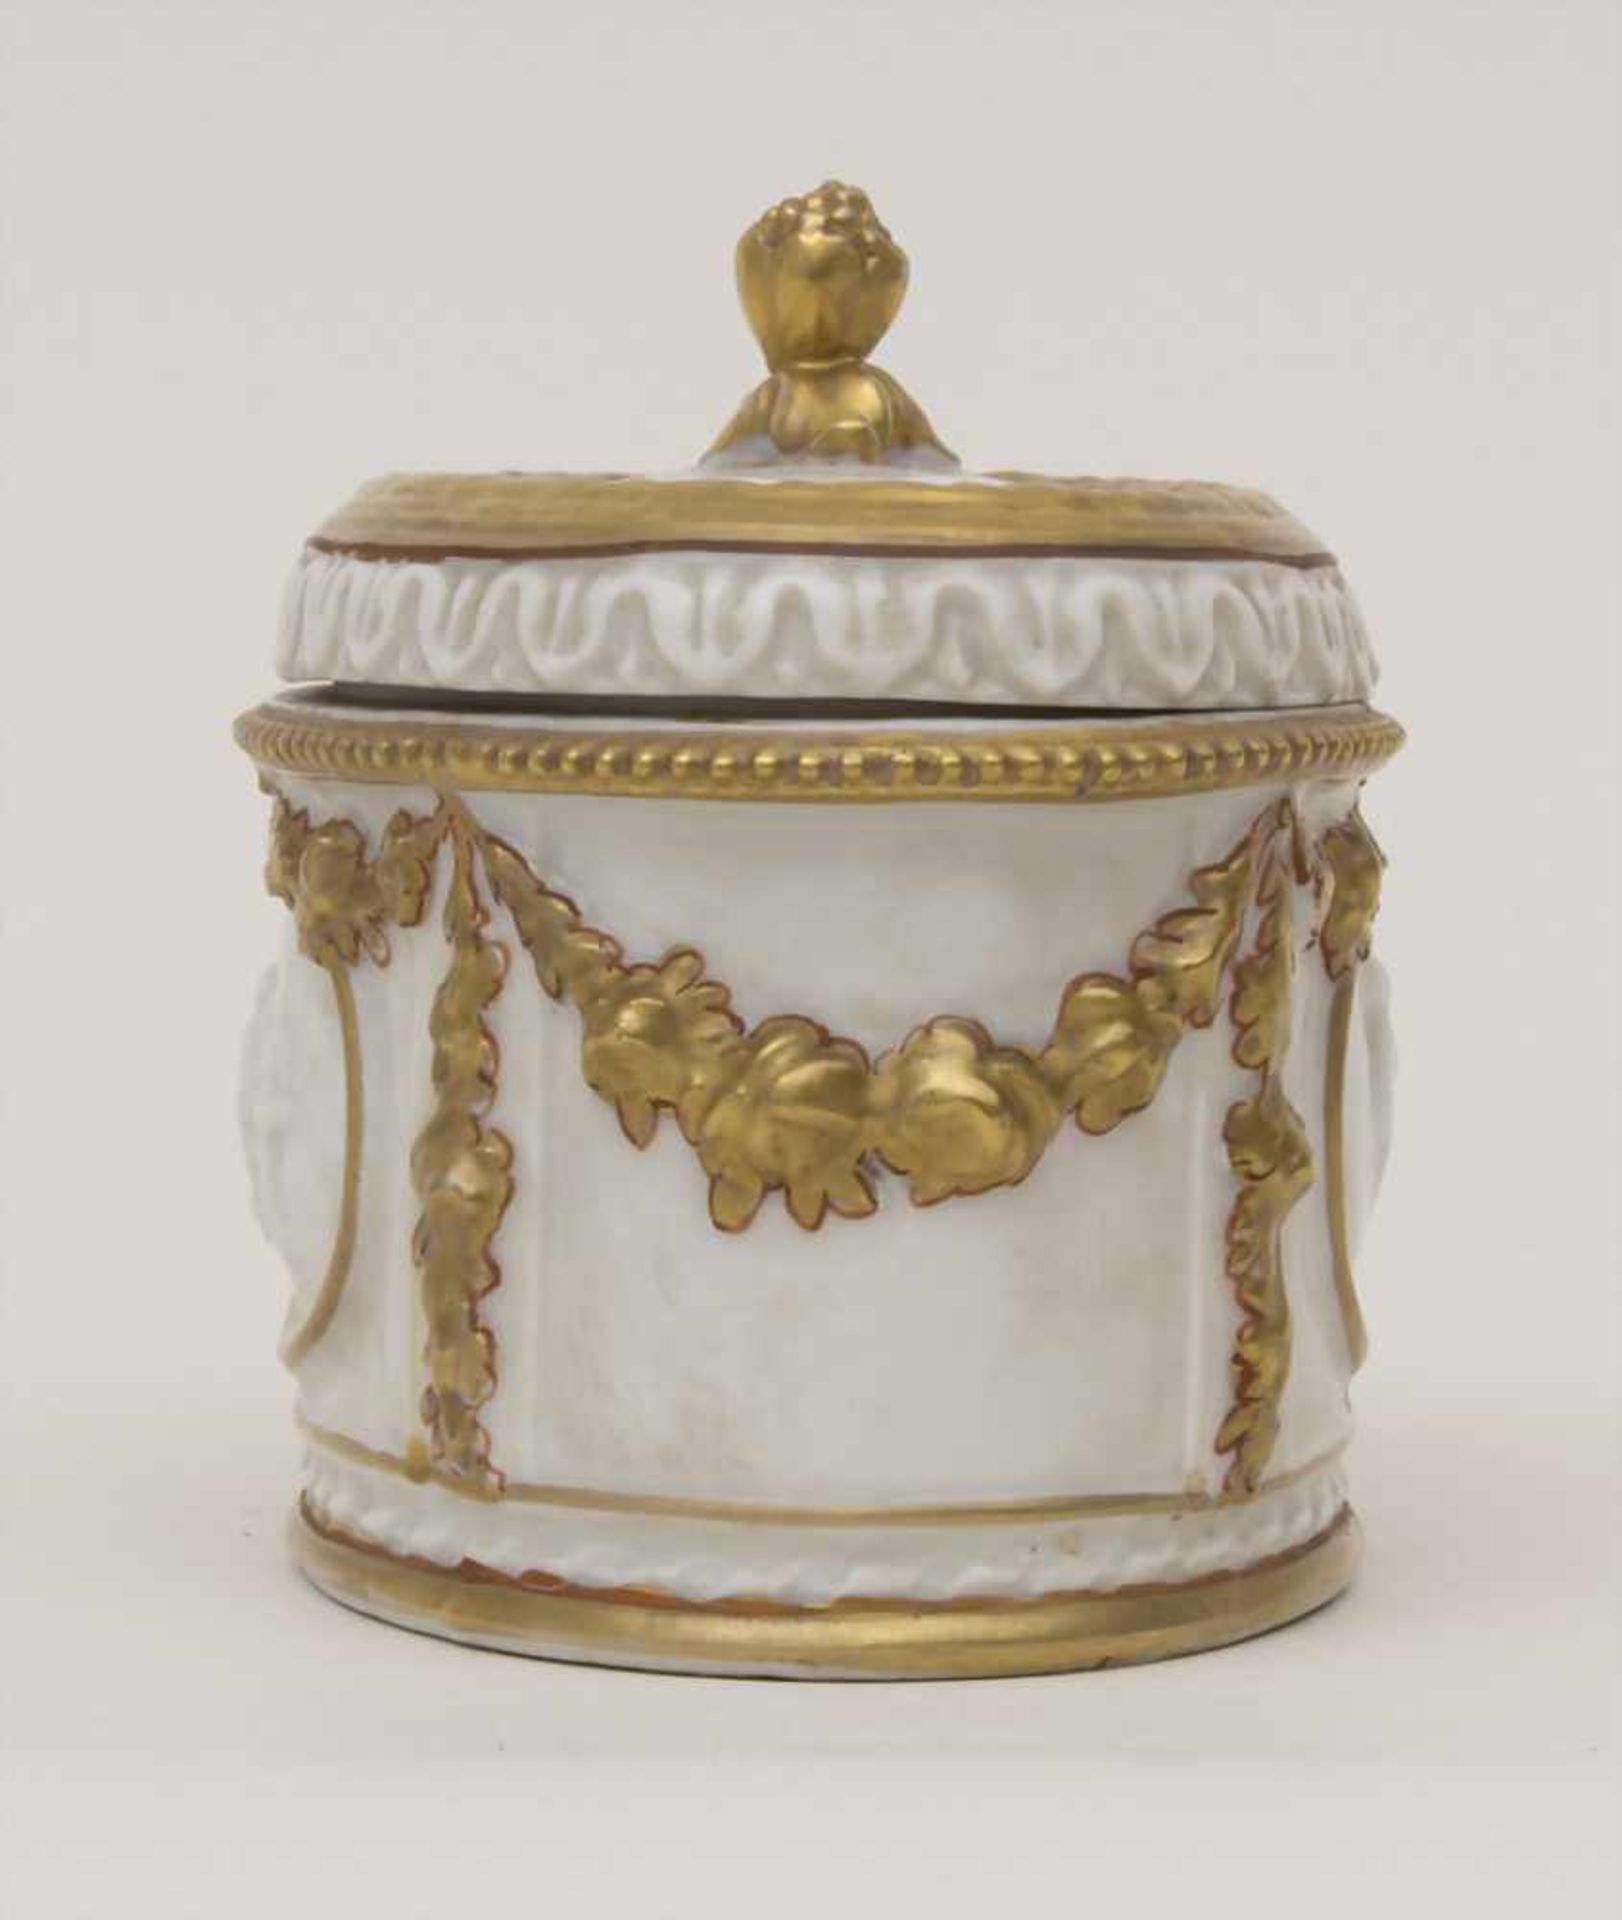 Deckeldose / A lidded box, Älteste Volkstedt, um 1900Material: Porzellan, goldstaffiert, glasiert, - Bild 2 aus 7